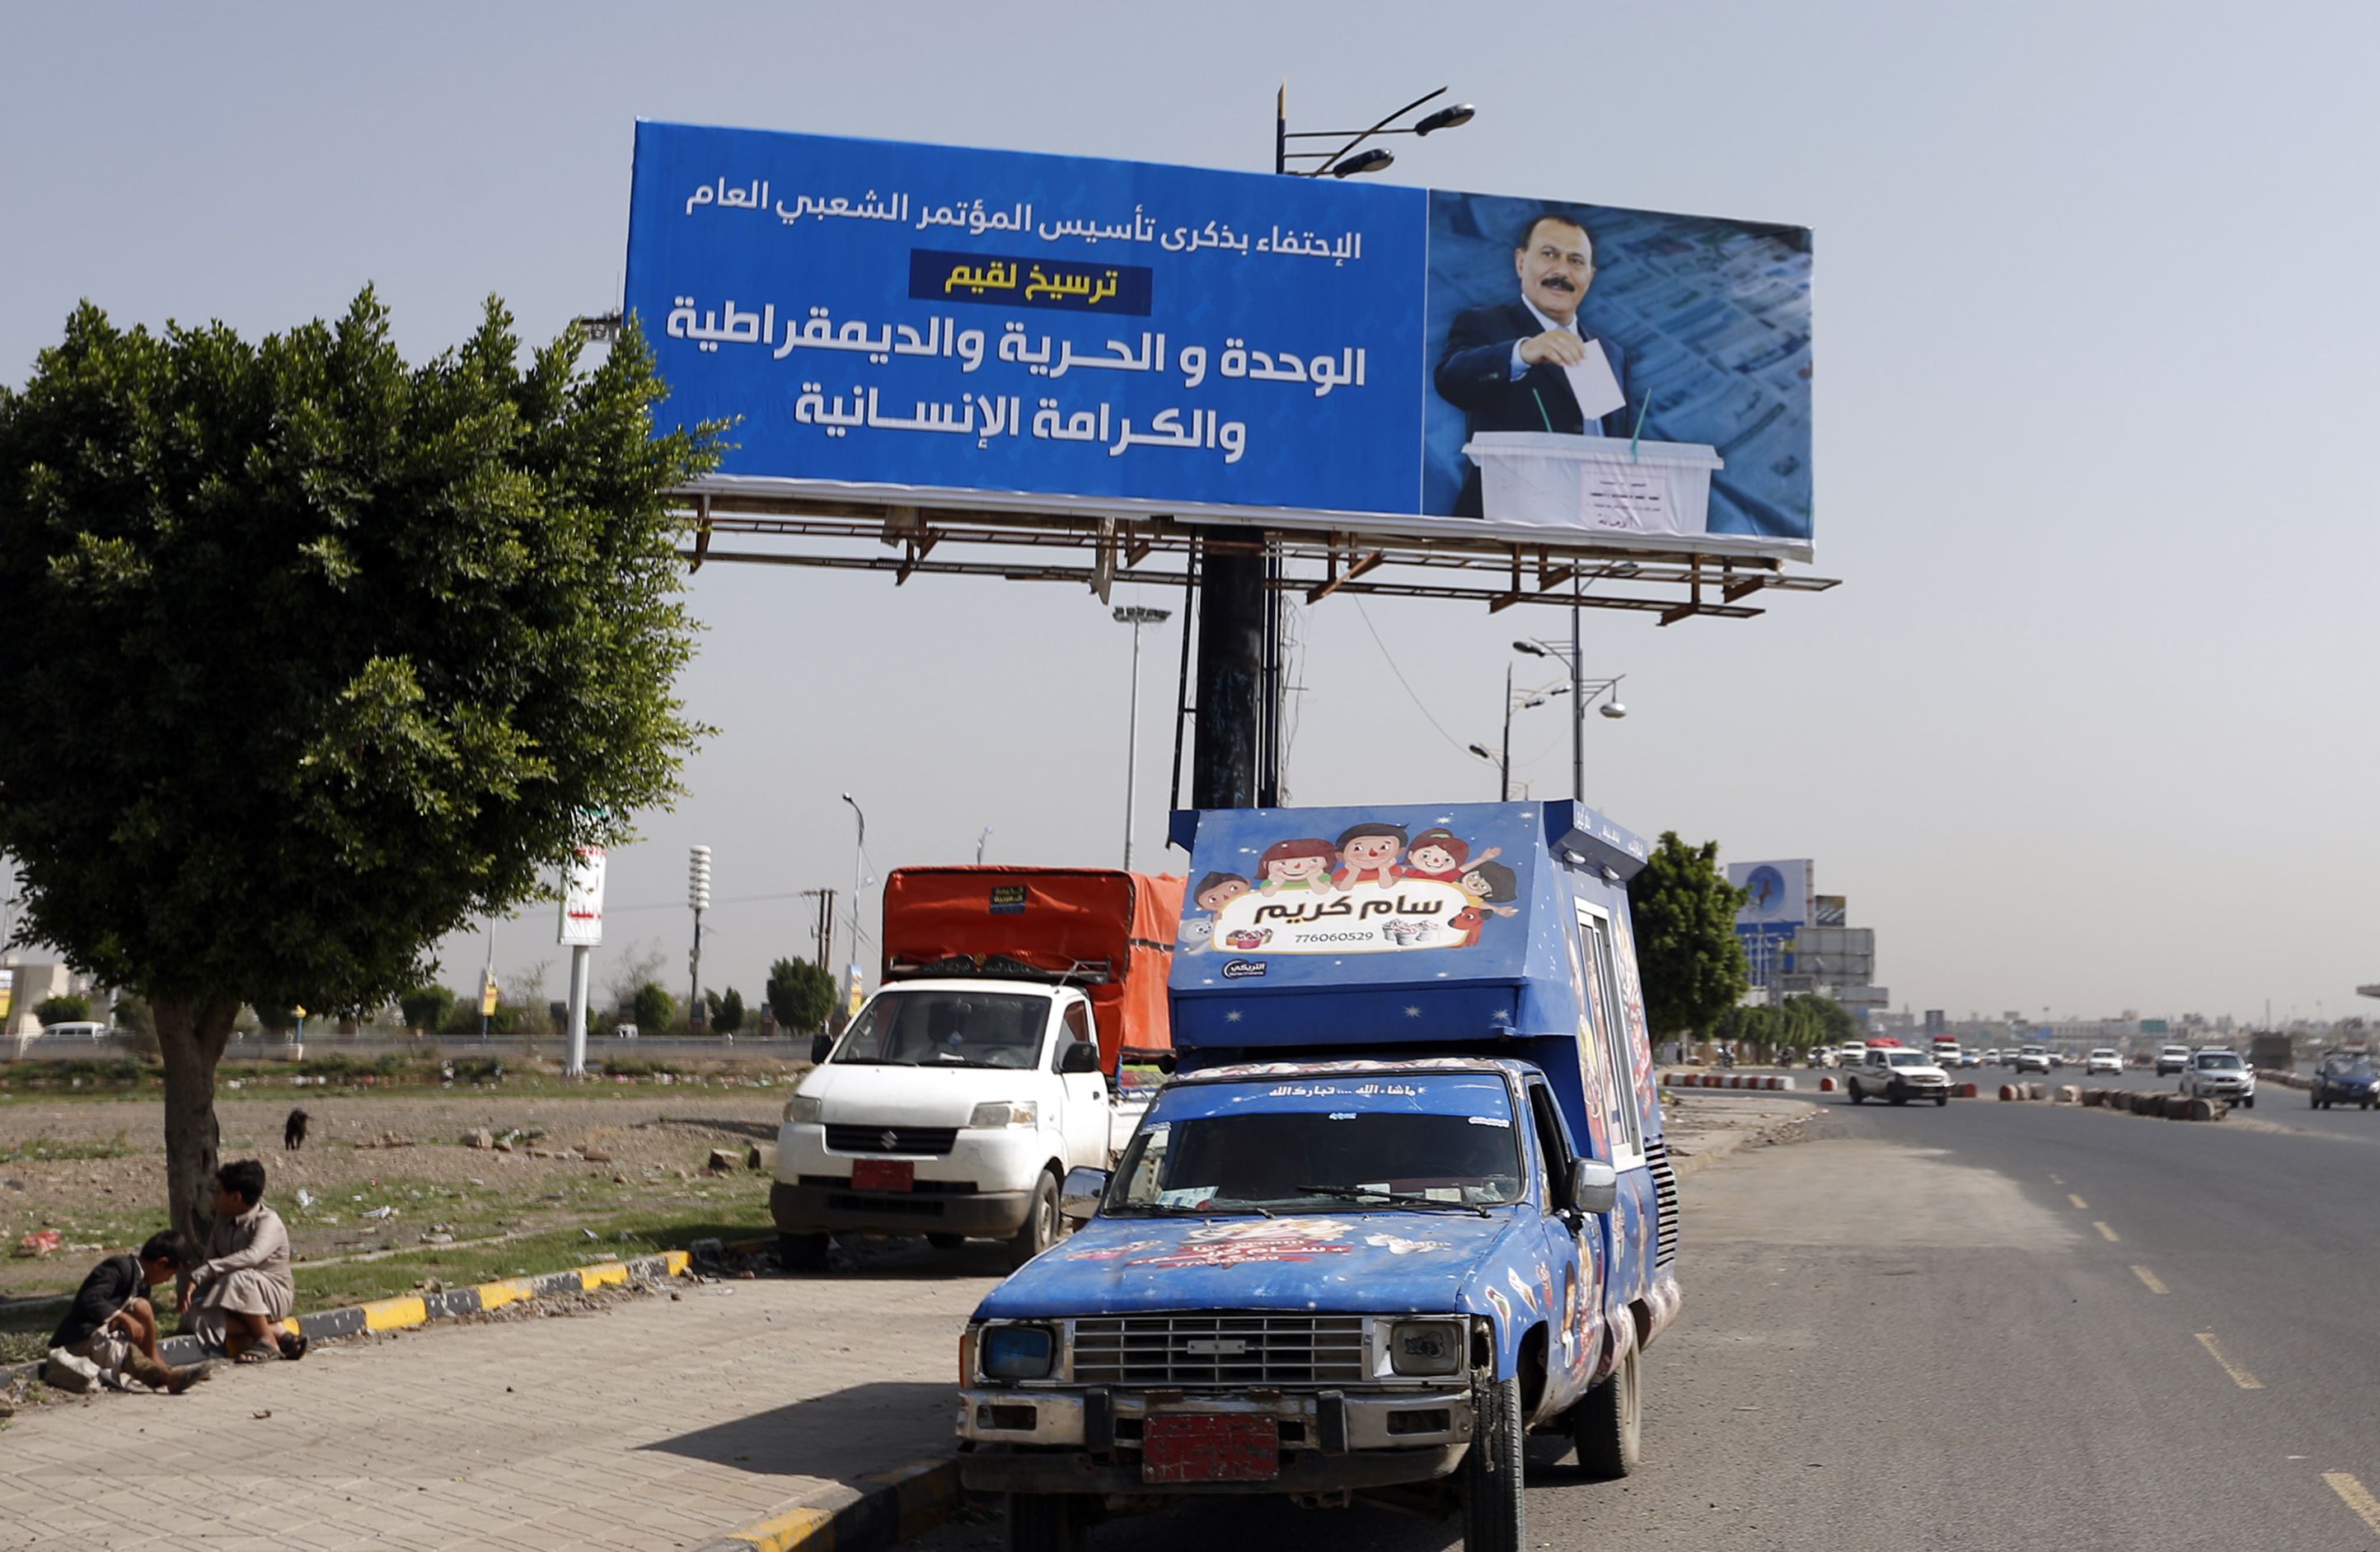 صور بوسترات الرئيس اليمنى المخلوع تنتشر فى شوارع صنعاء